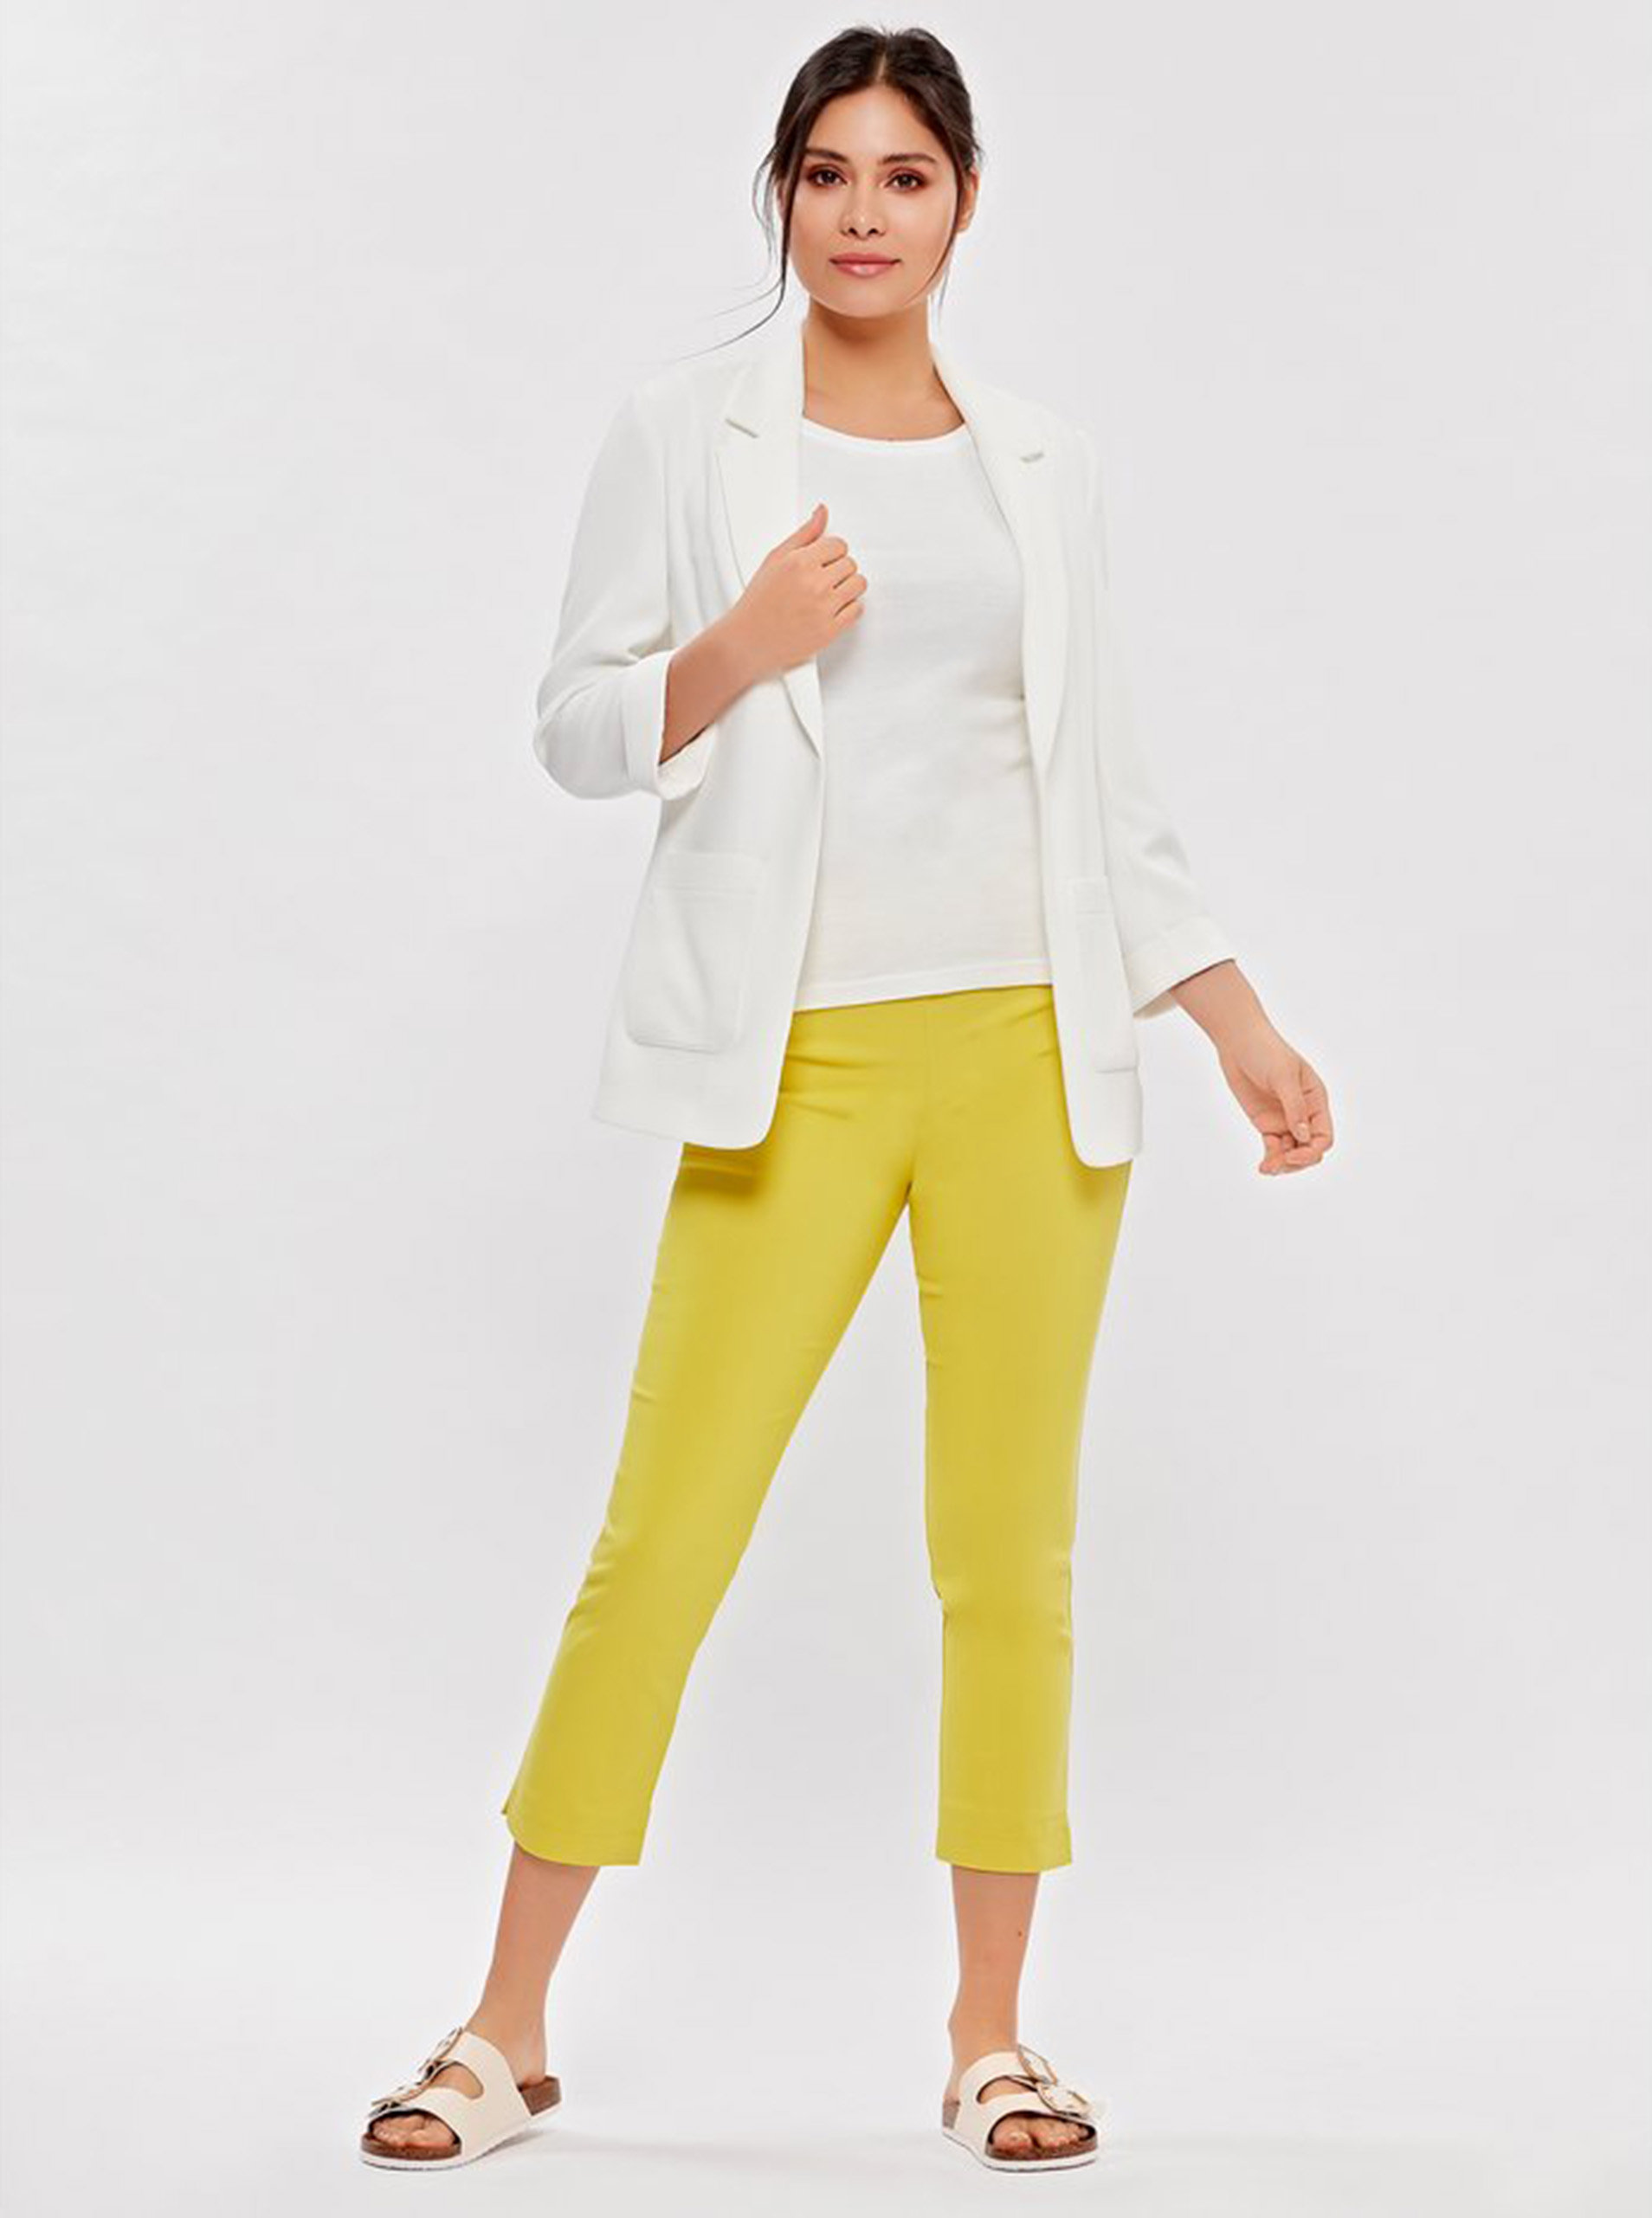 Žluté 3/4 skinny fit kalhoty M&Co